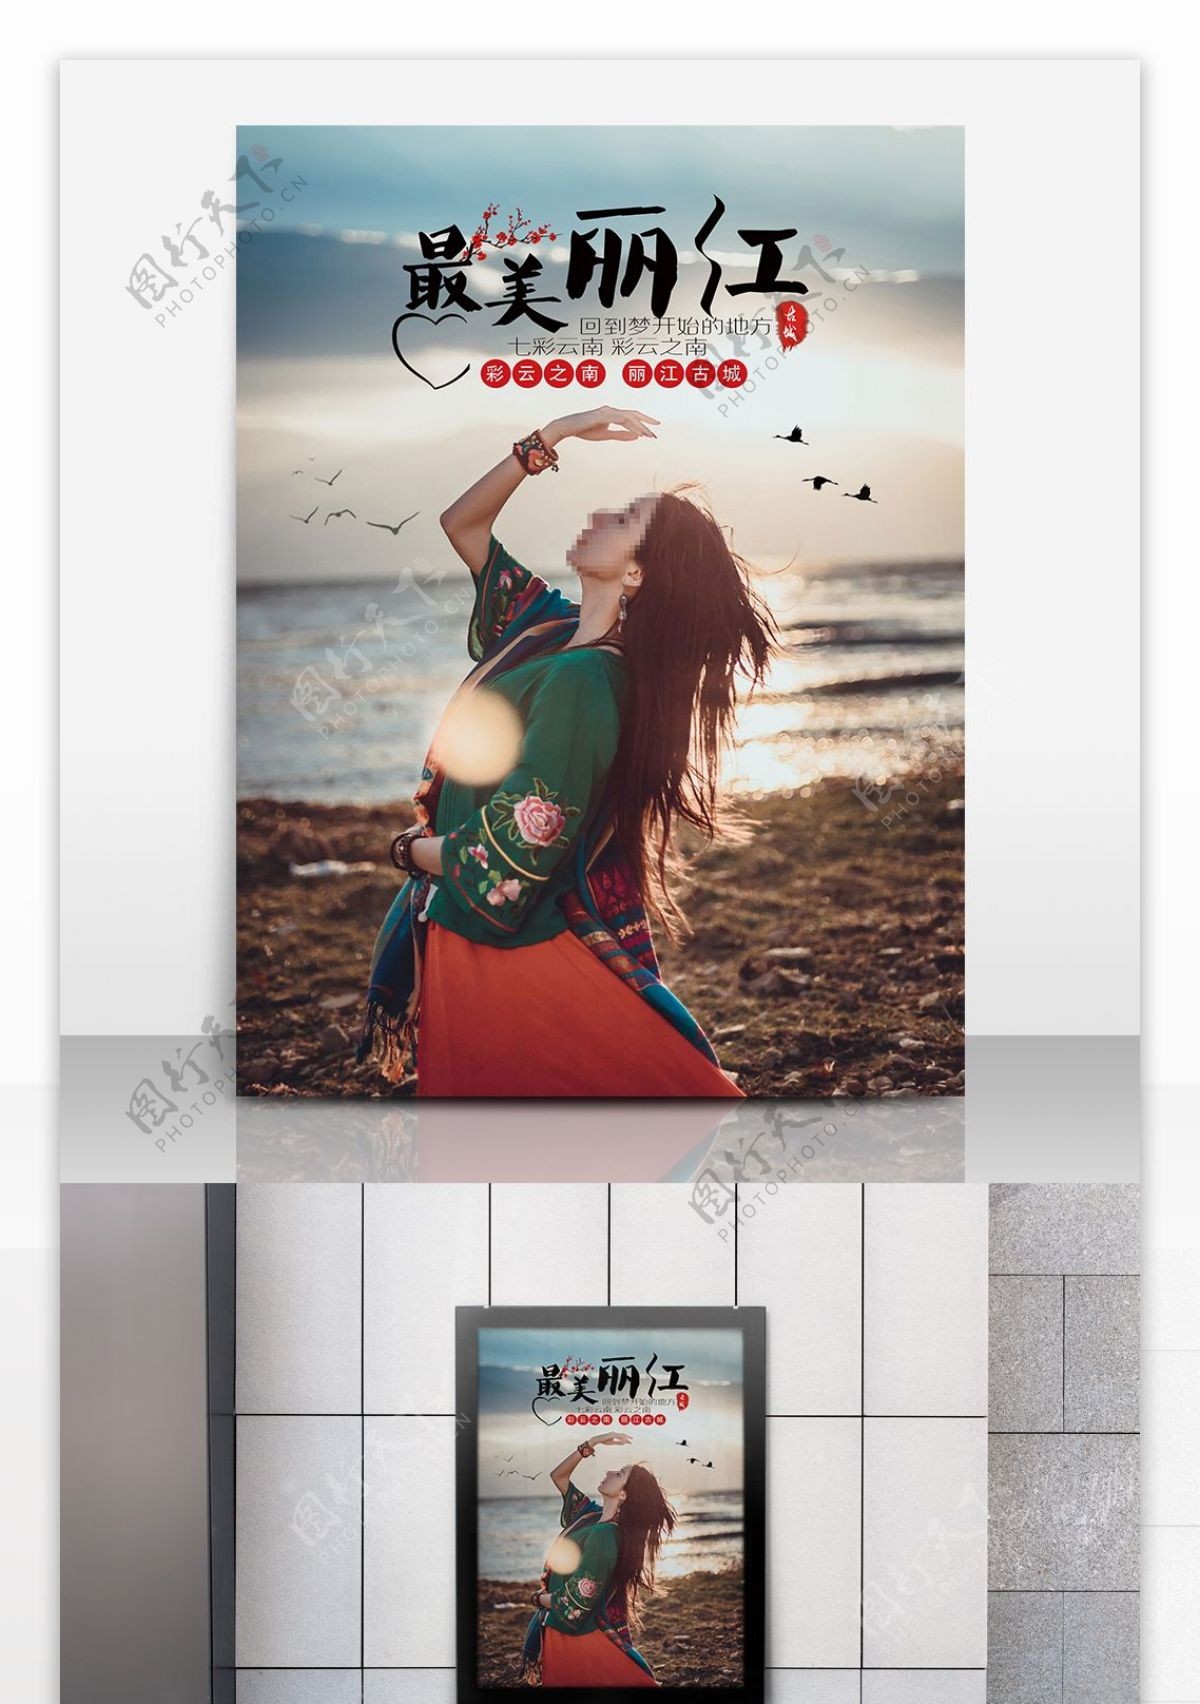 醉美丽江游旅游宣传广告